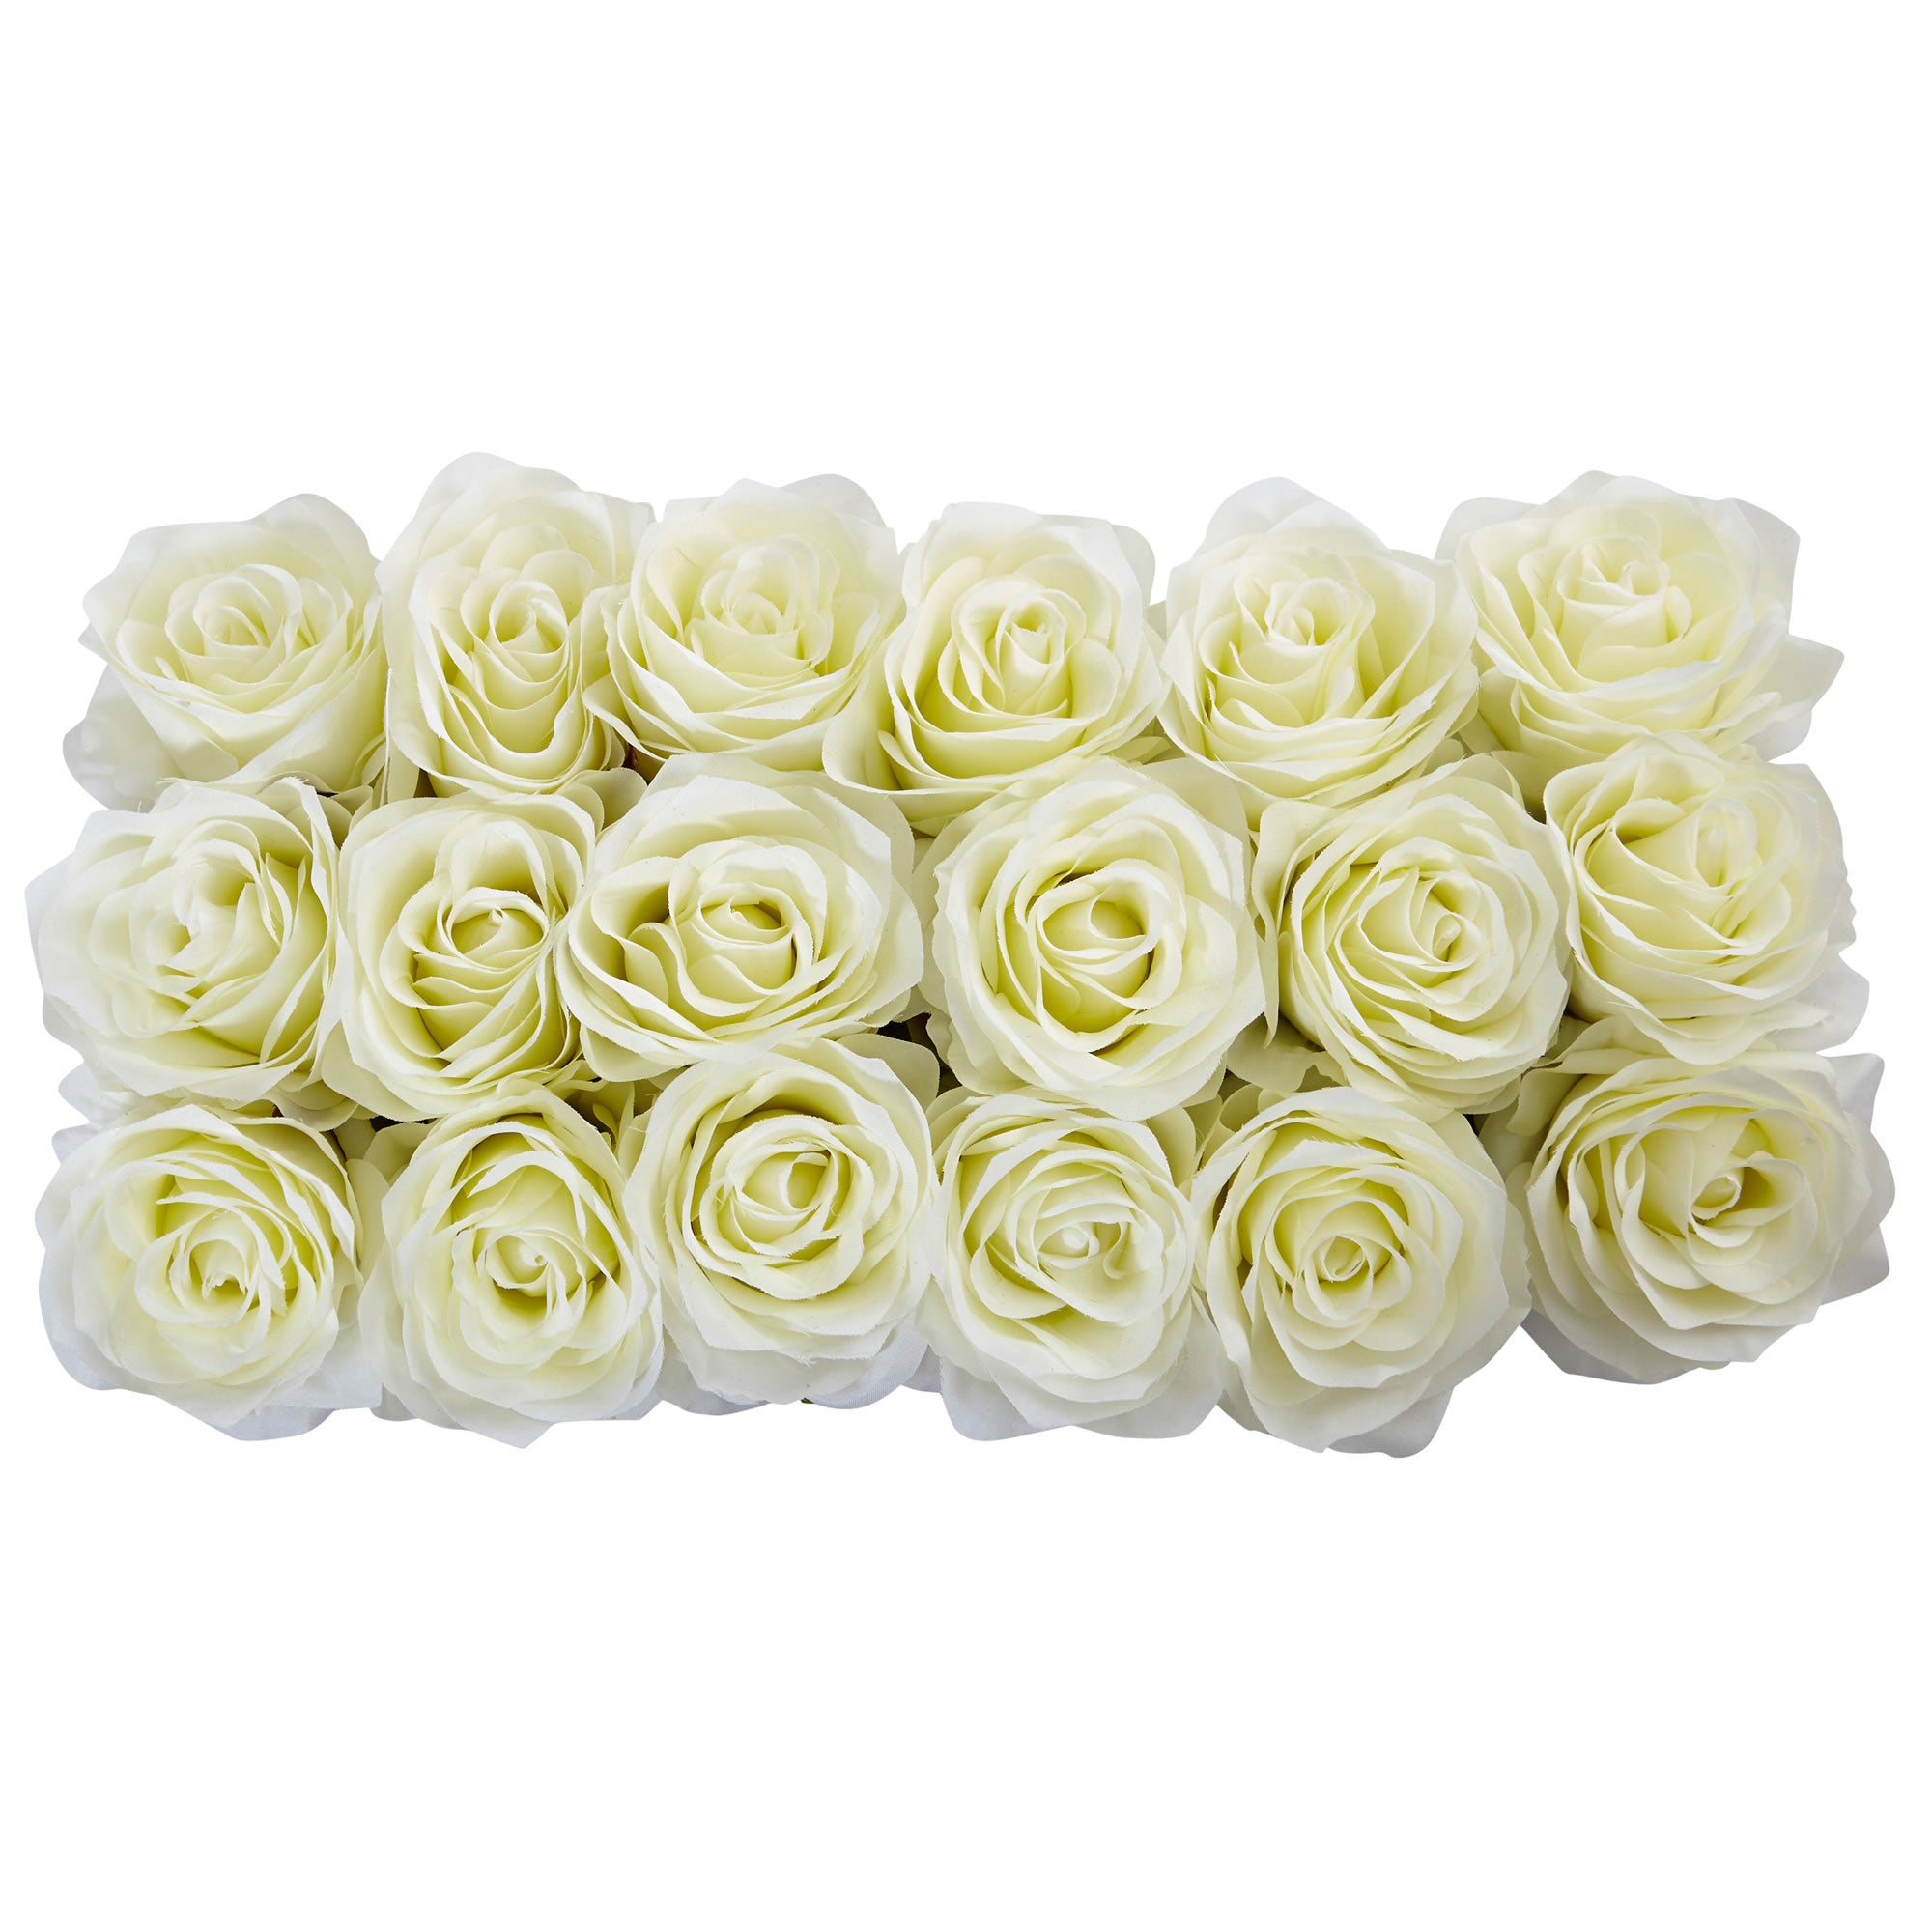 White Roses in Rectangular Planter